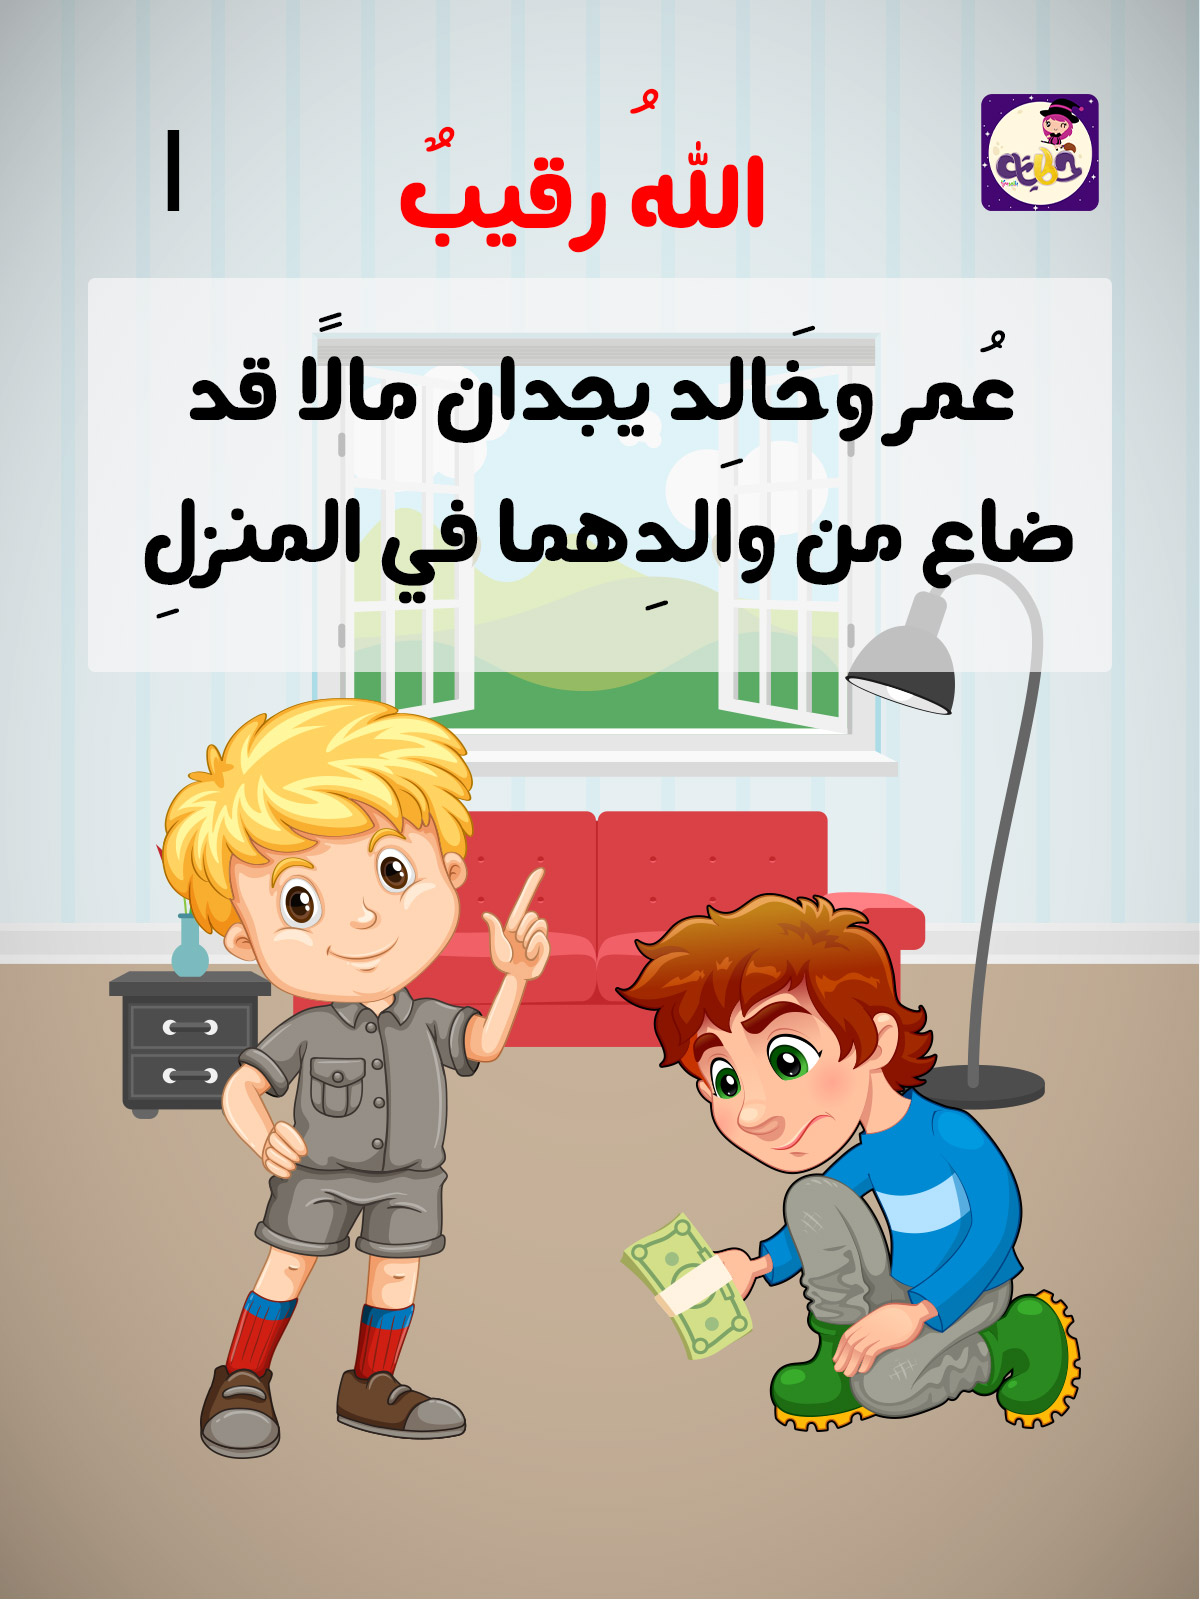 قصة قصيرة للاطفال مصورة , قصه روعه للاطفال - عتاب وزعل